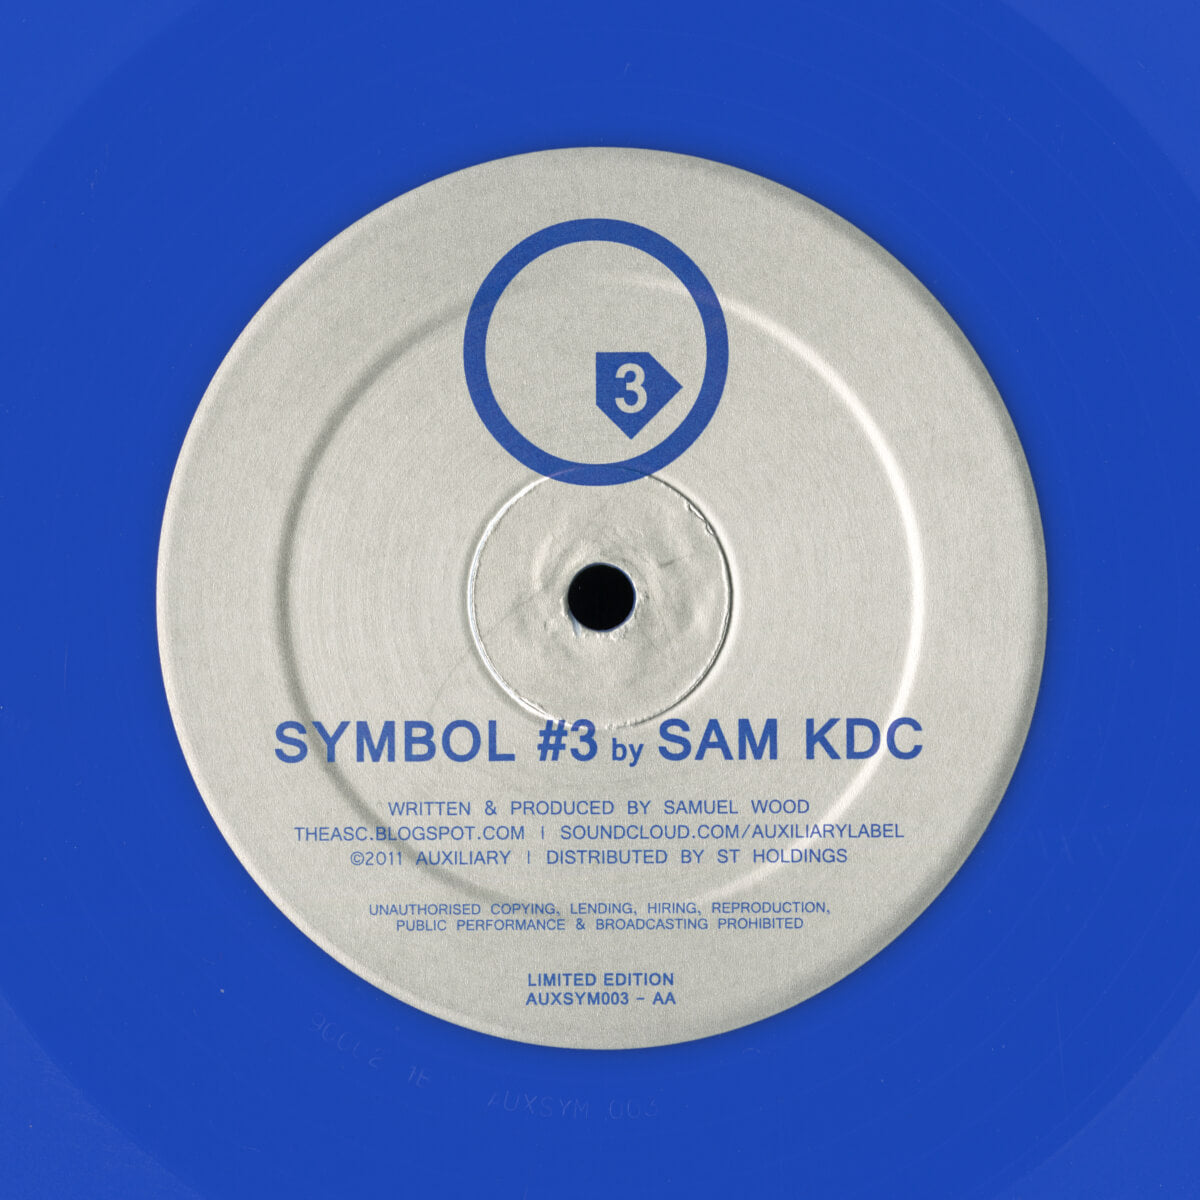 Sam KDC – Symbol #3